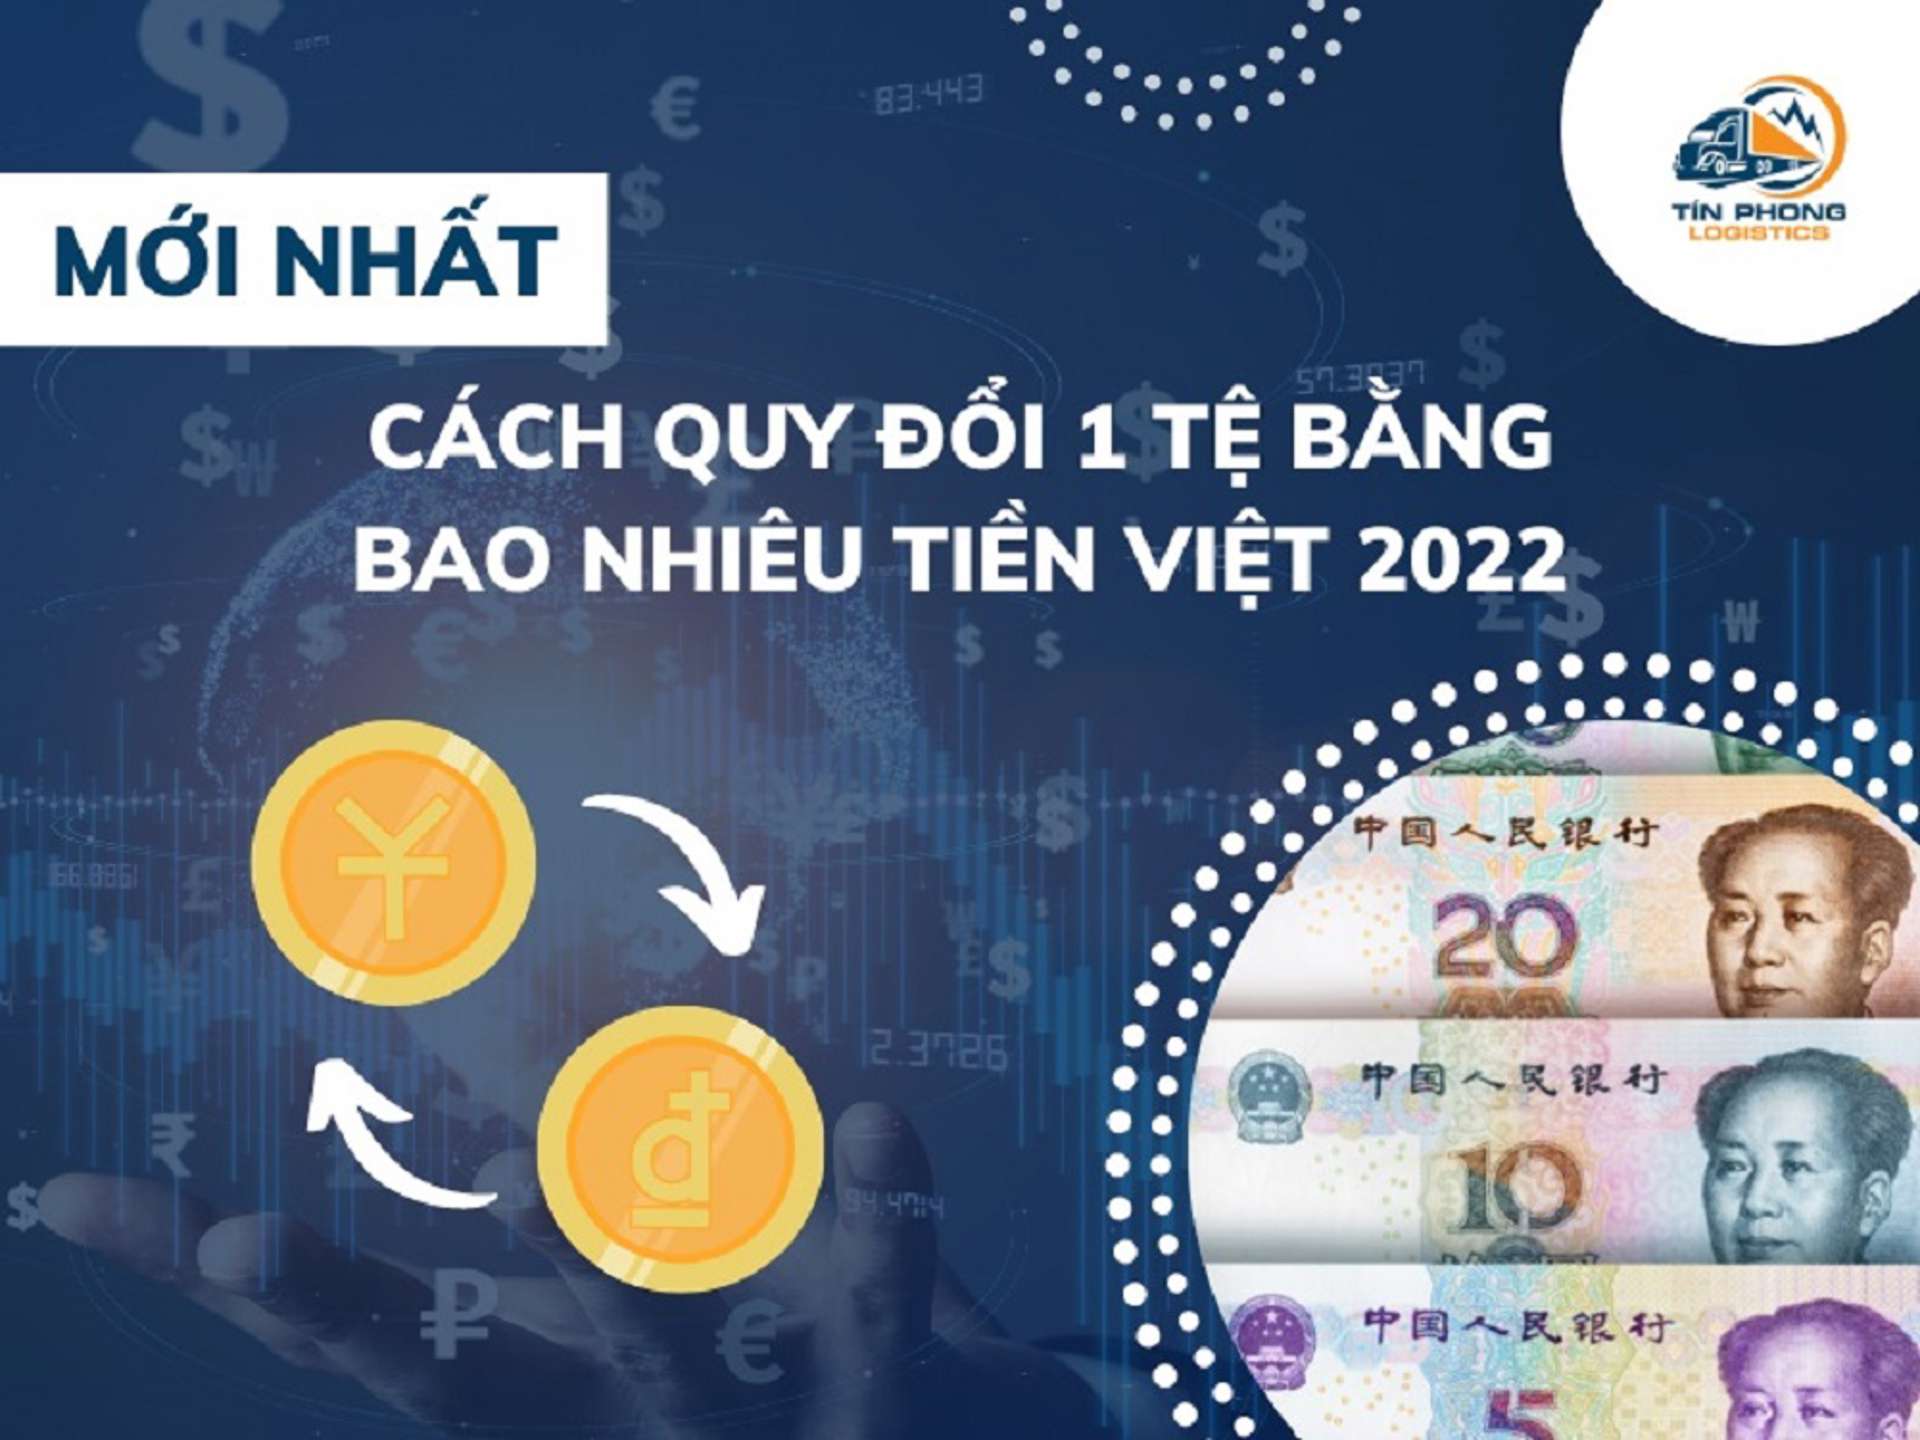 [UPDATE] 1 Tệ bằng bao nhiêu tiền Việt Nam?